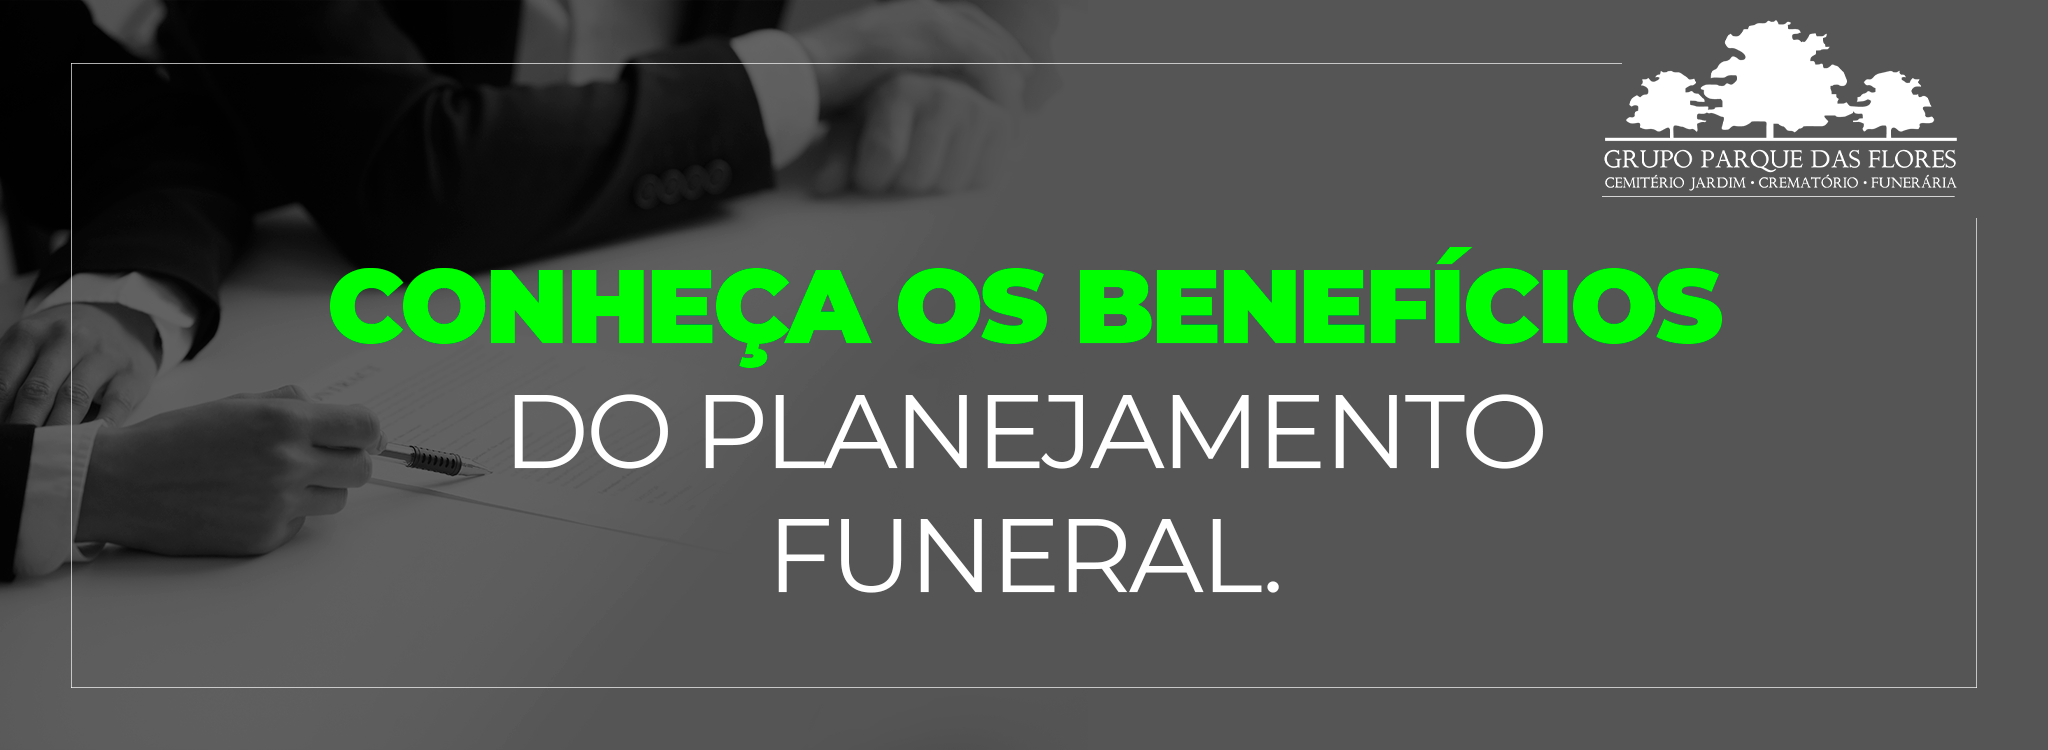 Conheça as vantagens do planejamento funeral